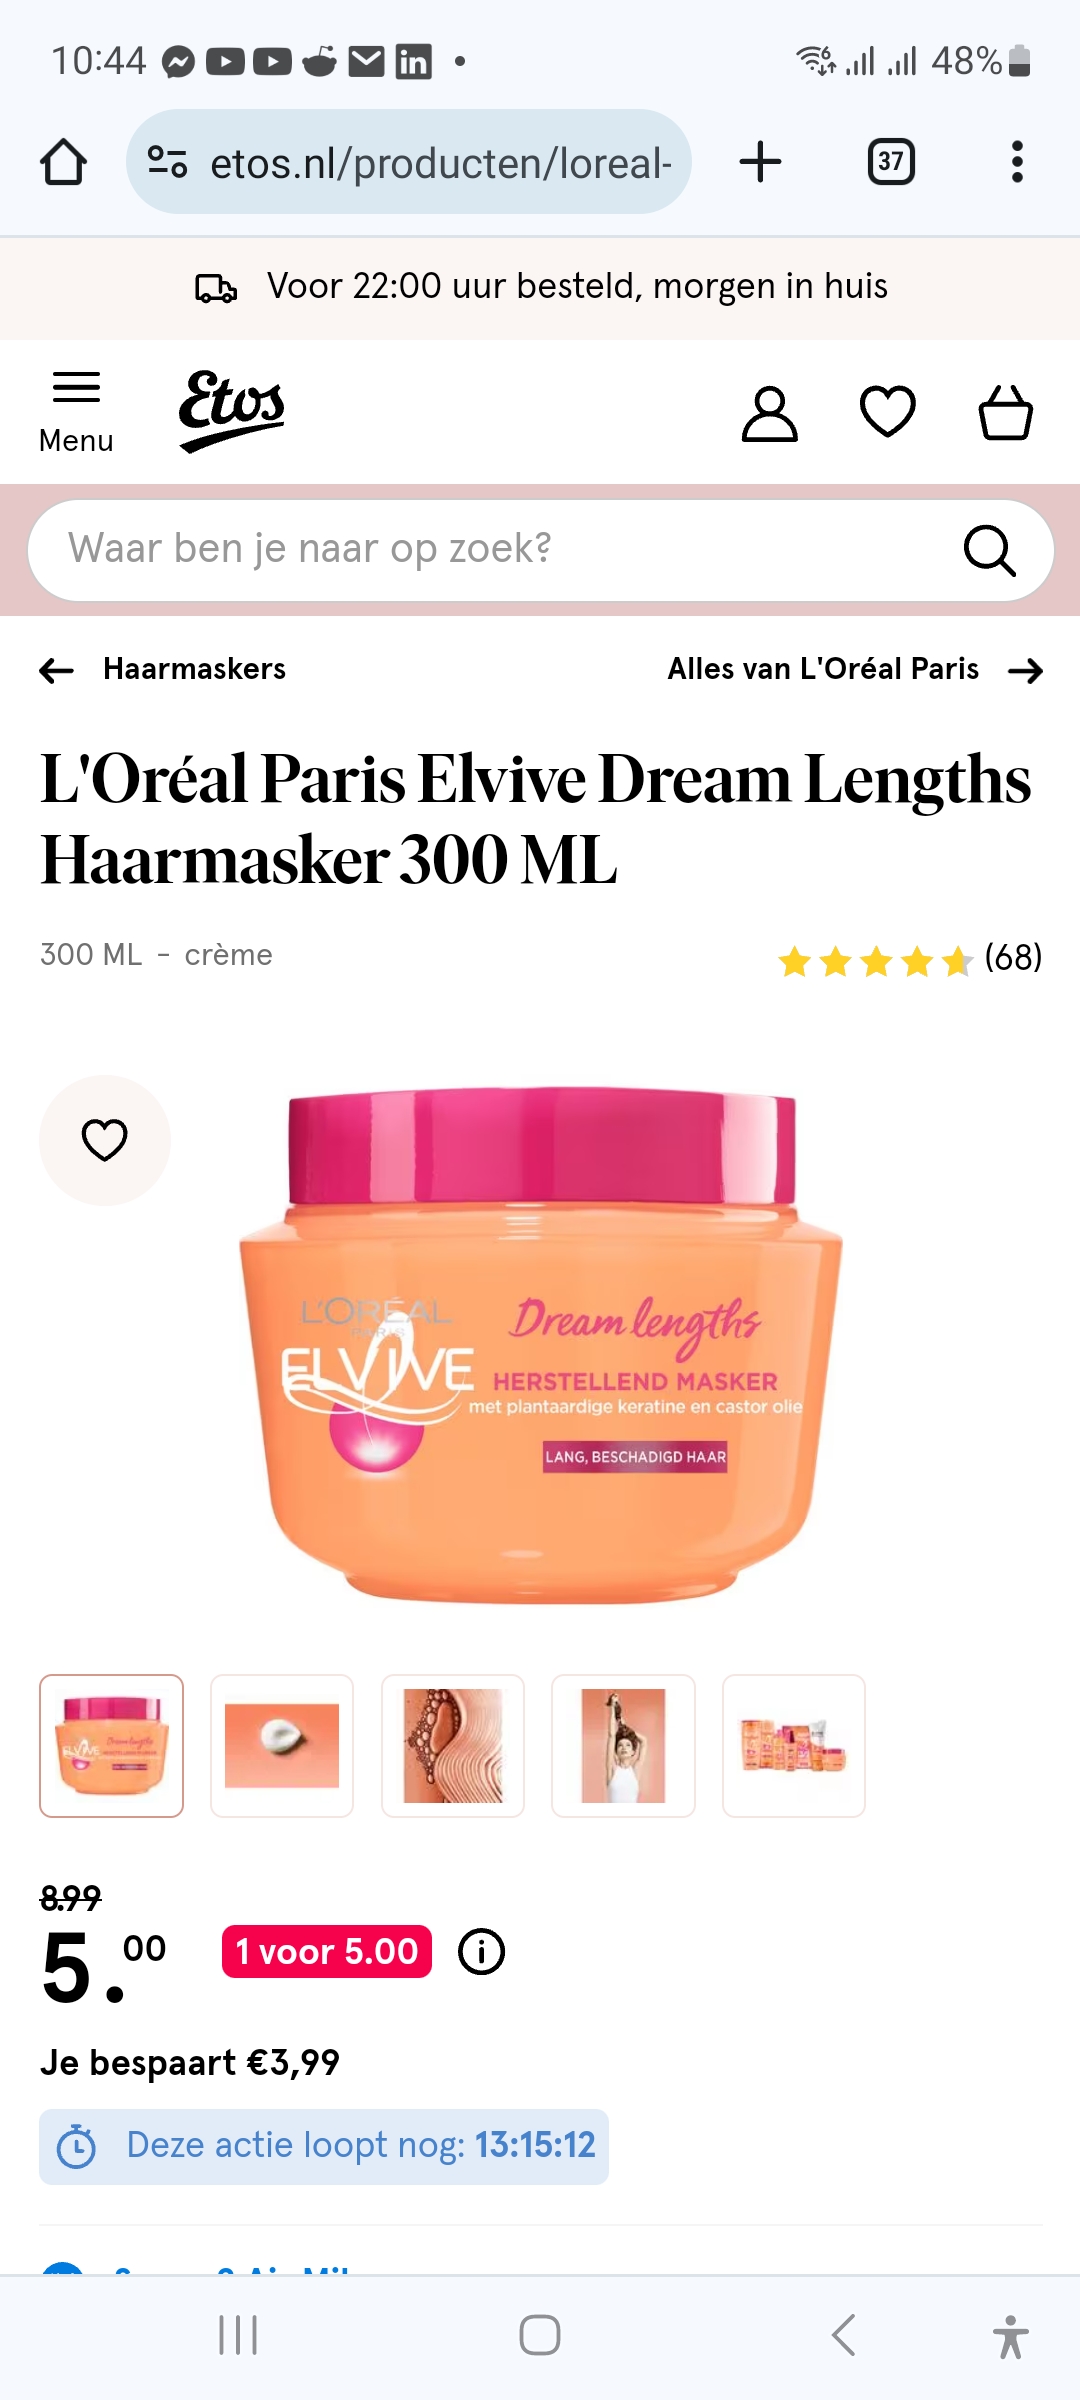 L'Oréal haarmasker 